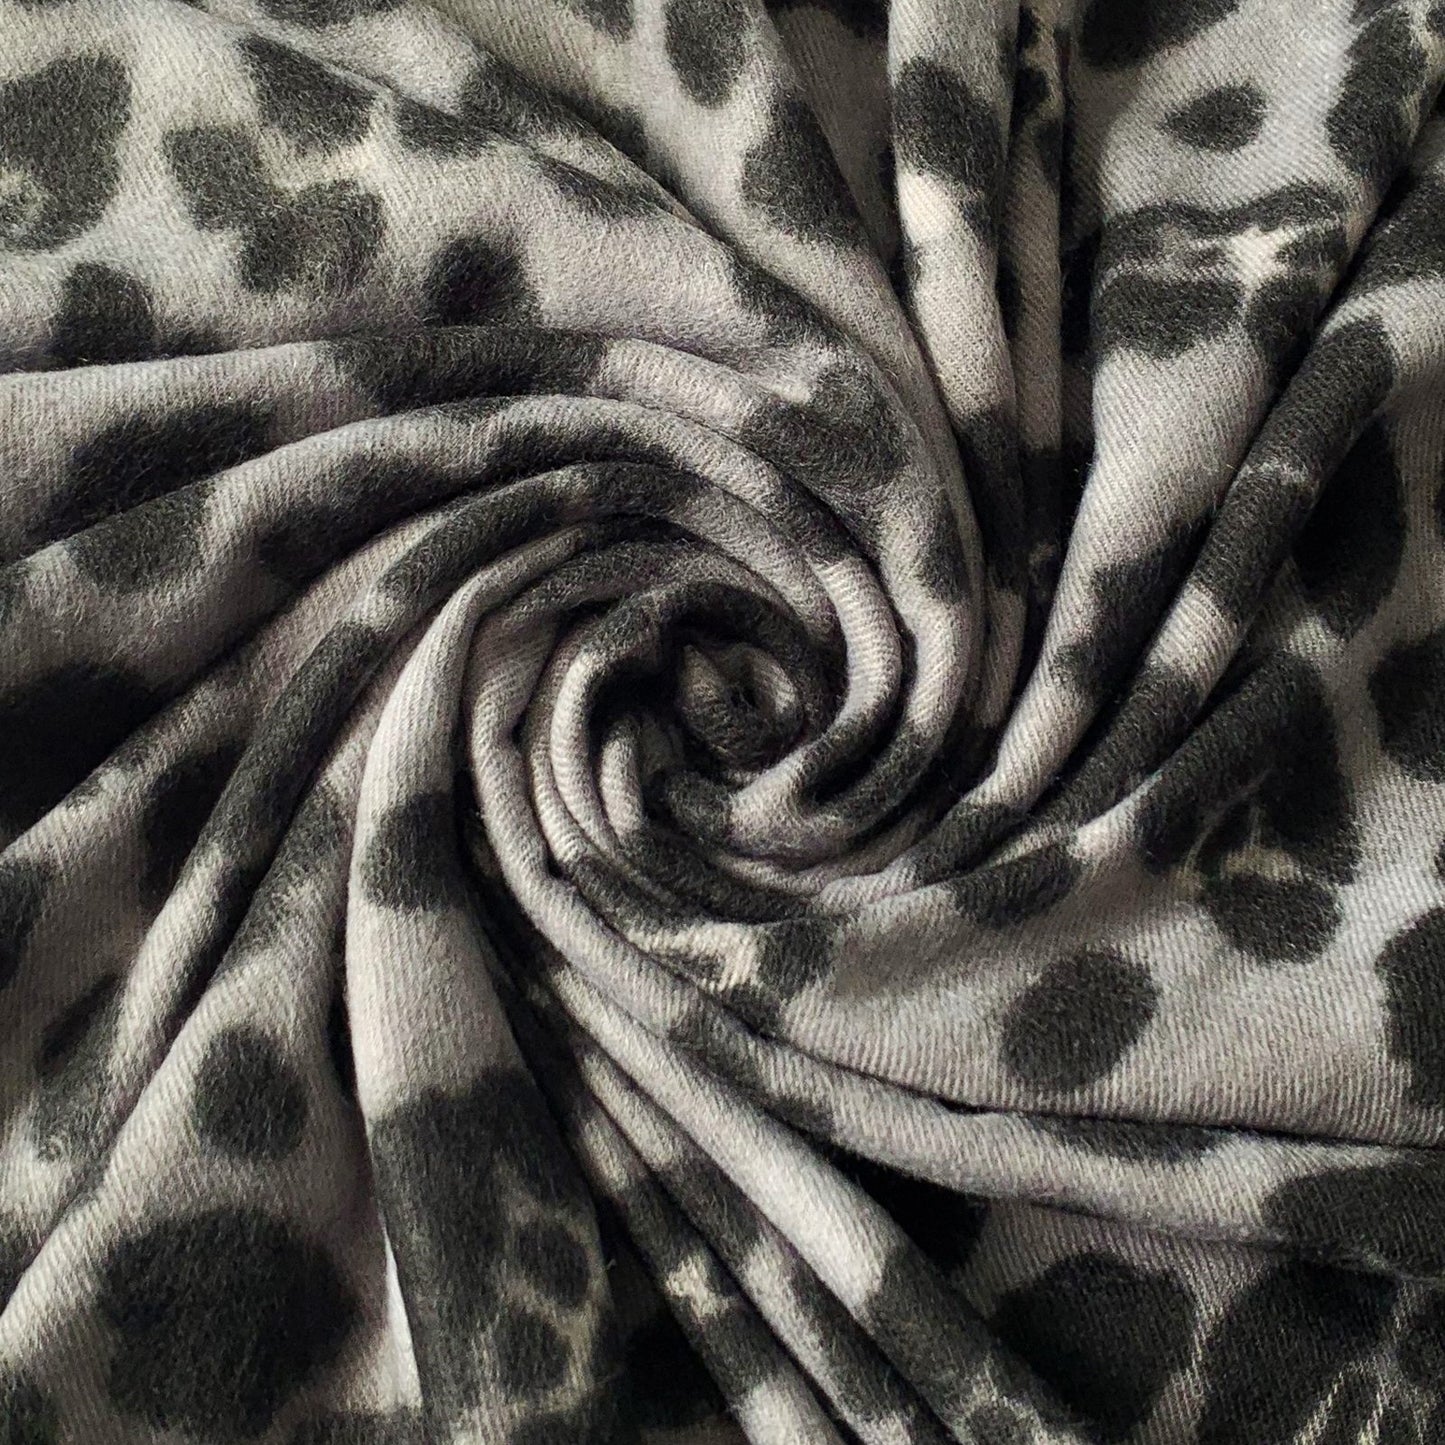 Vlnený šál-šatka, 65 cm x 180 cm, Leopardí vzor, Sivá farba